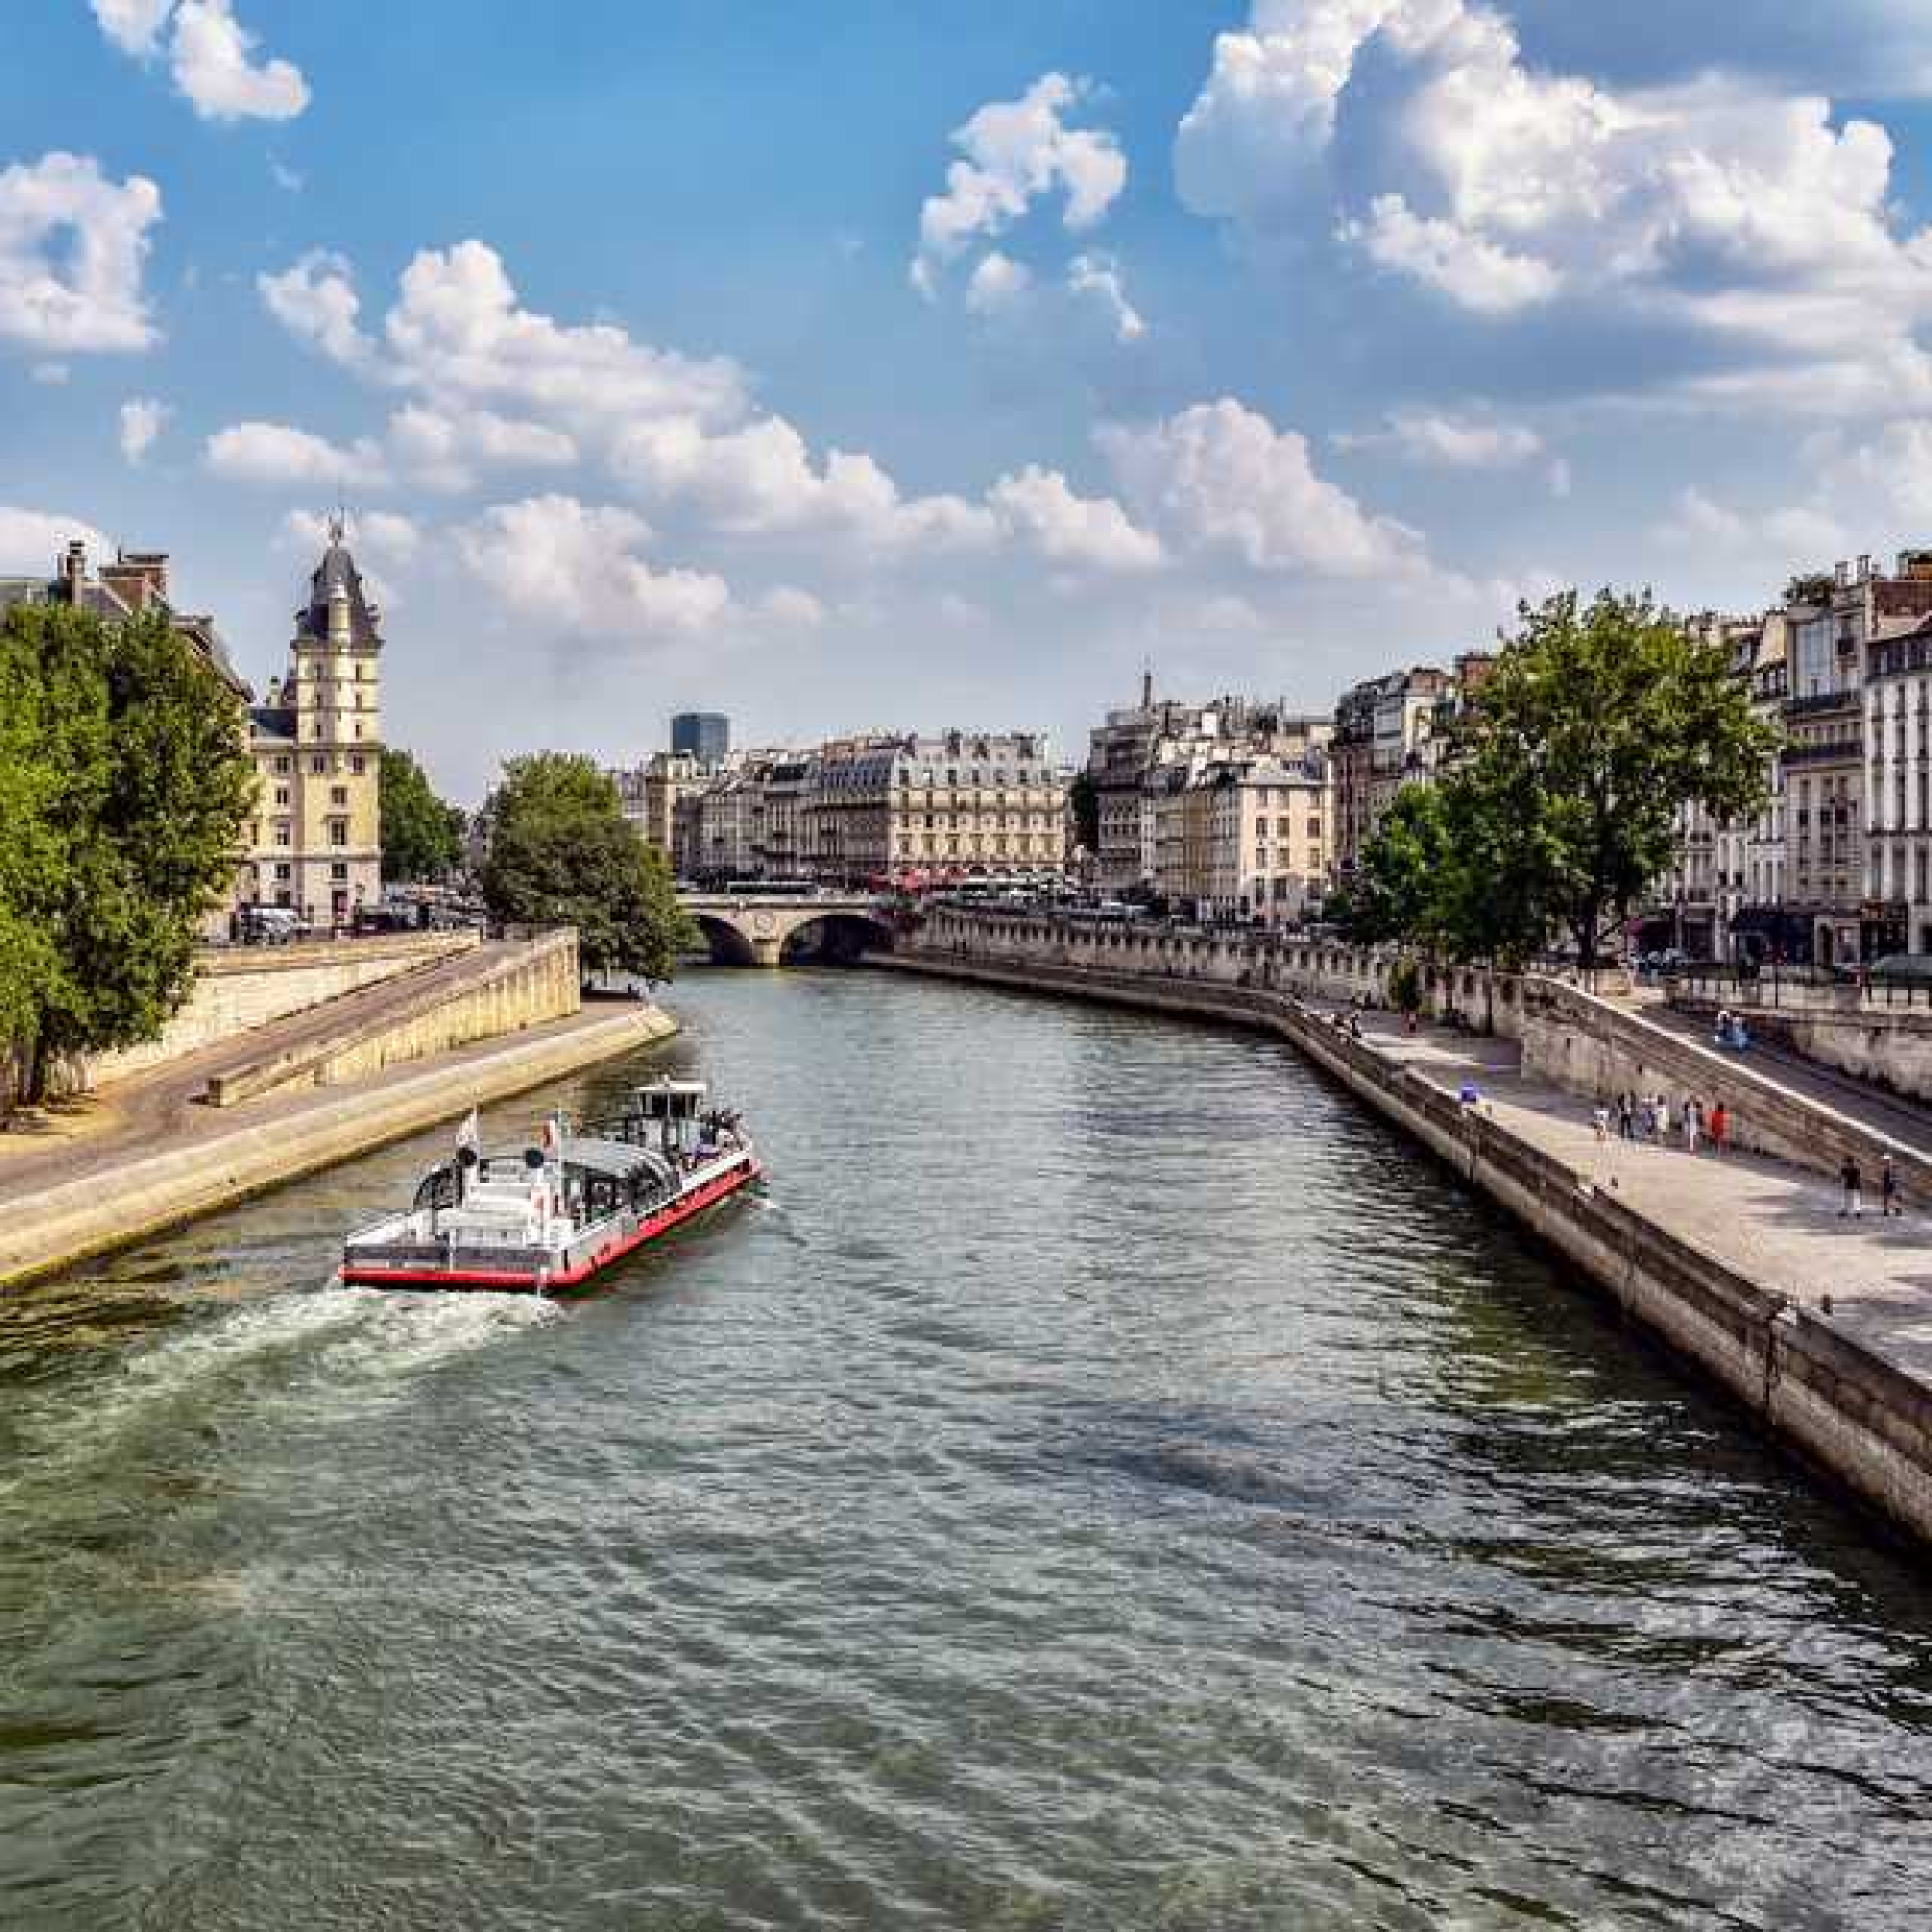 Le seine. Река сена в Париже. Река сена во Франции. Река сена Лувр. Набережная Орлеан в Париже.